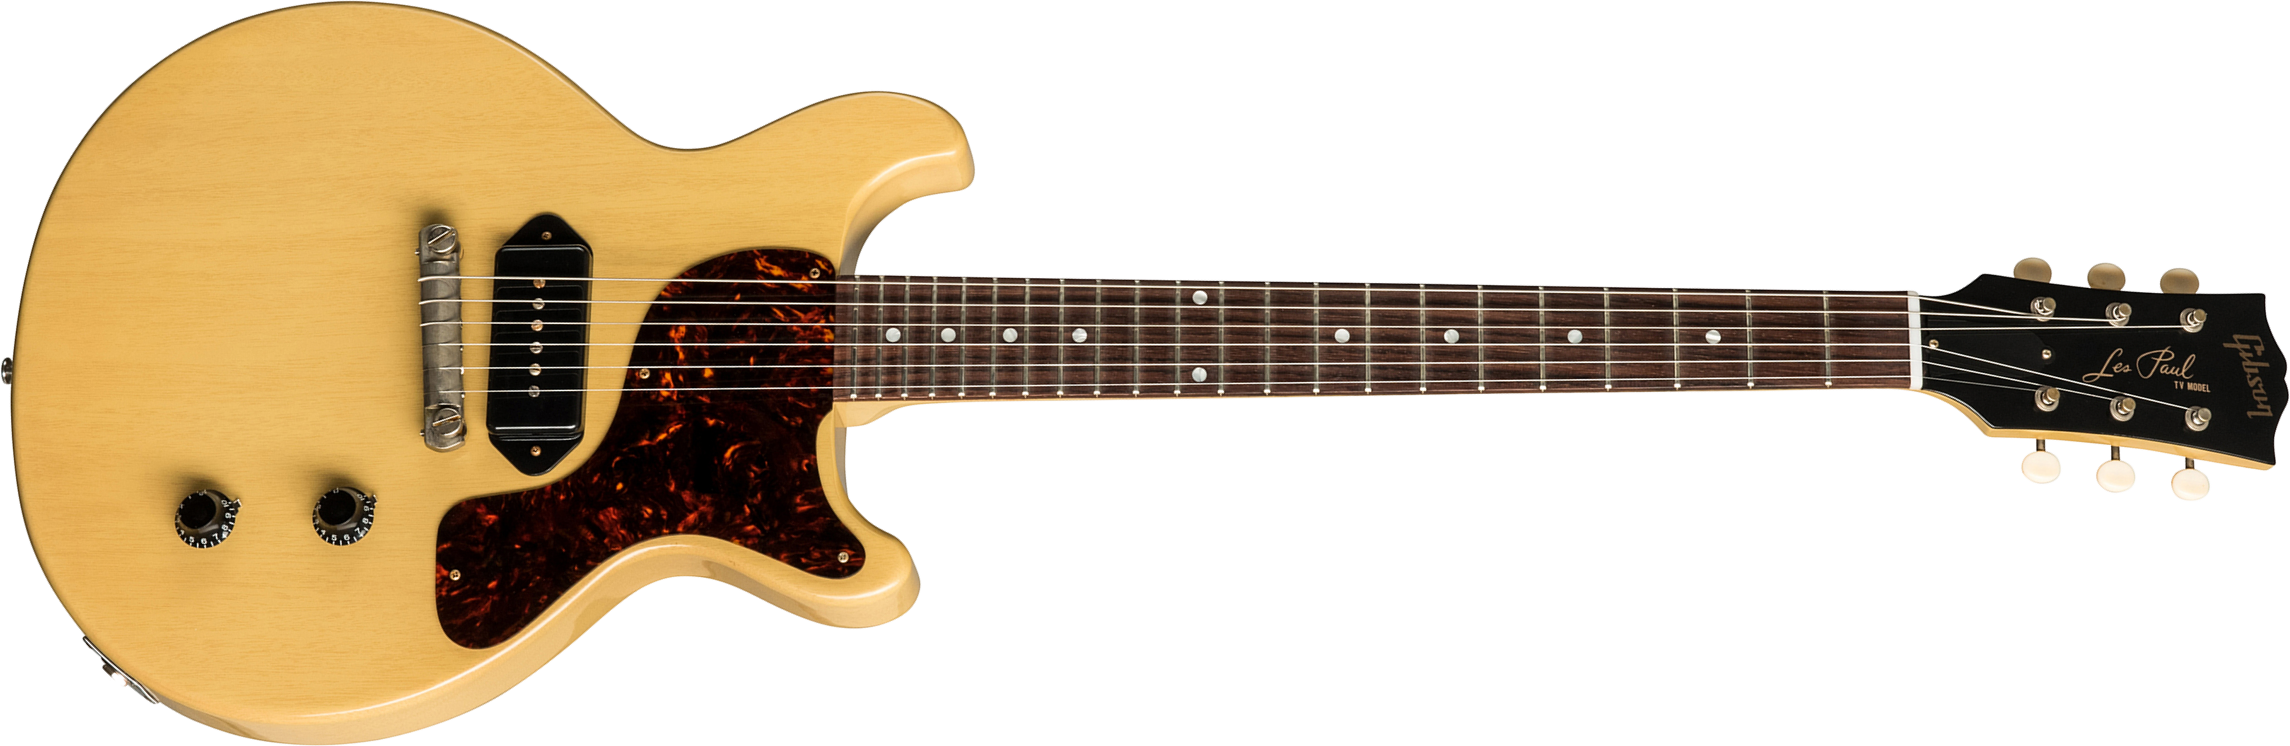 Gibson Custom Shop Les Paul Junior 1958 Double Cut Reissue P90 Ht Rw - Vos Tv Yellow - Guitarra eléctrica de corte único. - Main picture